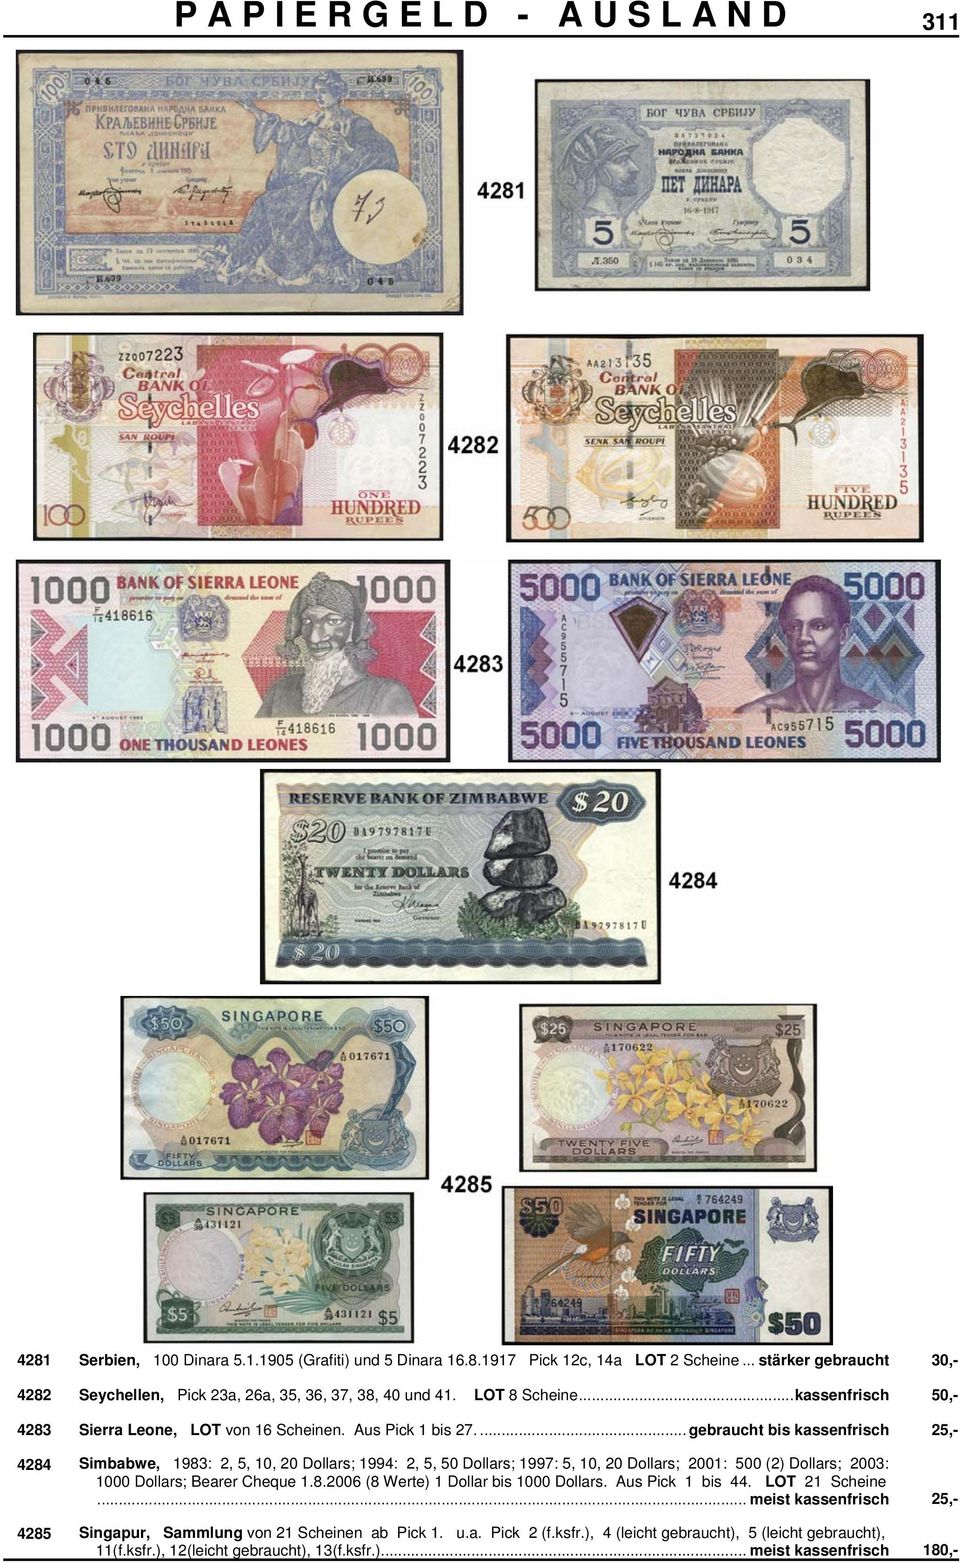 ... gebraucht bis kassenfrisch 25,- 4284 Simbabwe, 1983: 2, 5, 10, 20 Dollars; 1994: 2, 5, 50 Dollars; 1997: 5, 10, 20 Dollars; 2001: 500 (2) Dollars; 2003: 1000 Dollars; Bearer Cheque 1.8.2006 (8 Werte) 1 Dollar bis 1000 Dollars.